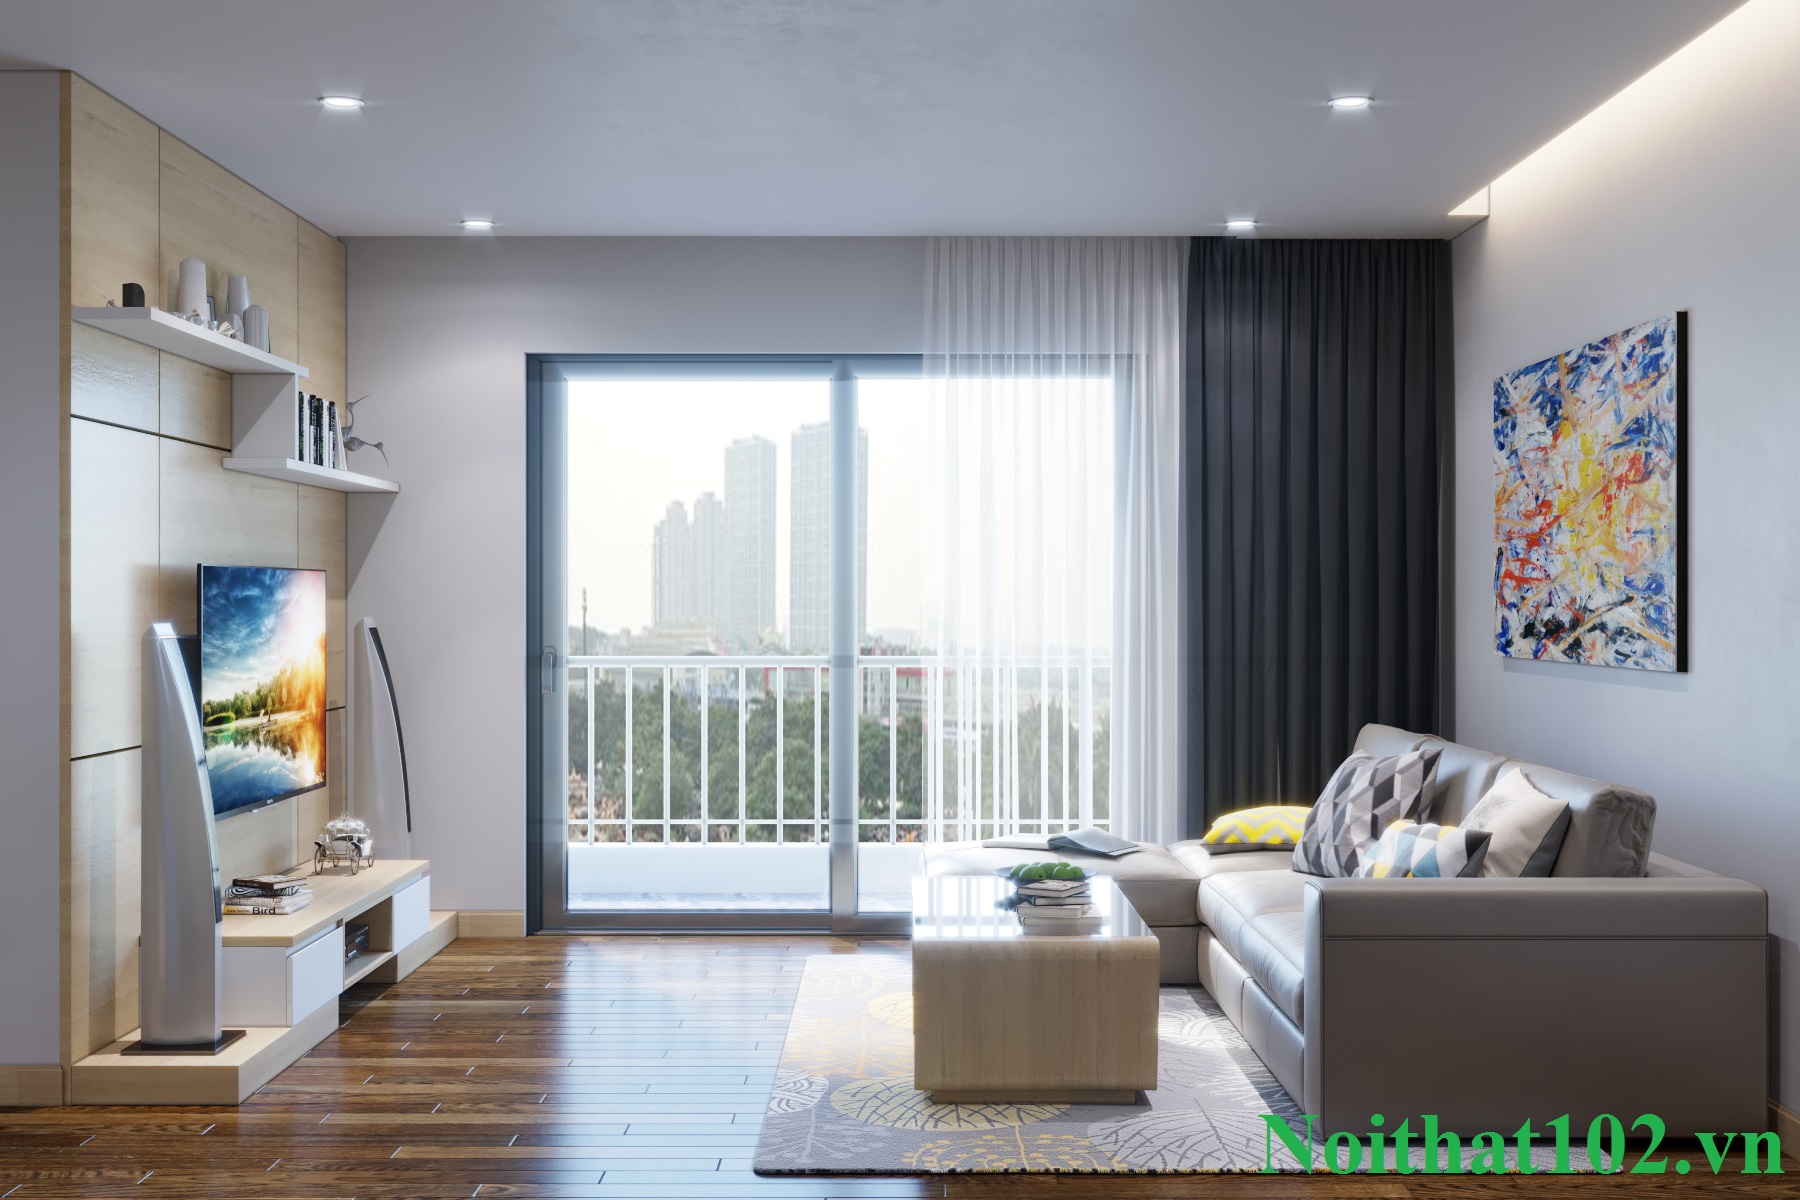 Thiết kế nội thất chung cư nhà anh Hải Kim Giang: Phòng khách